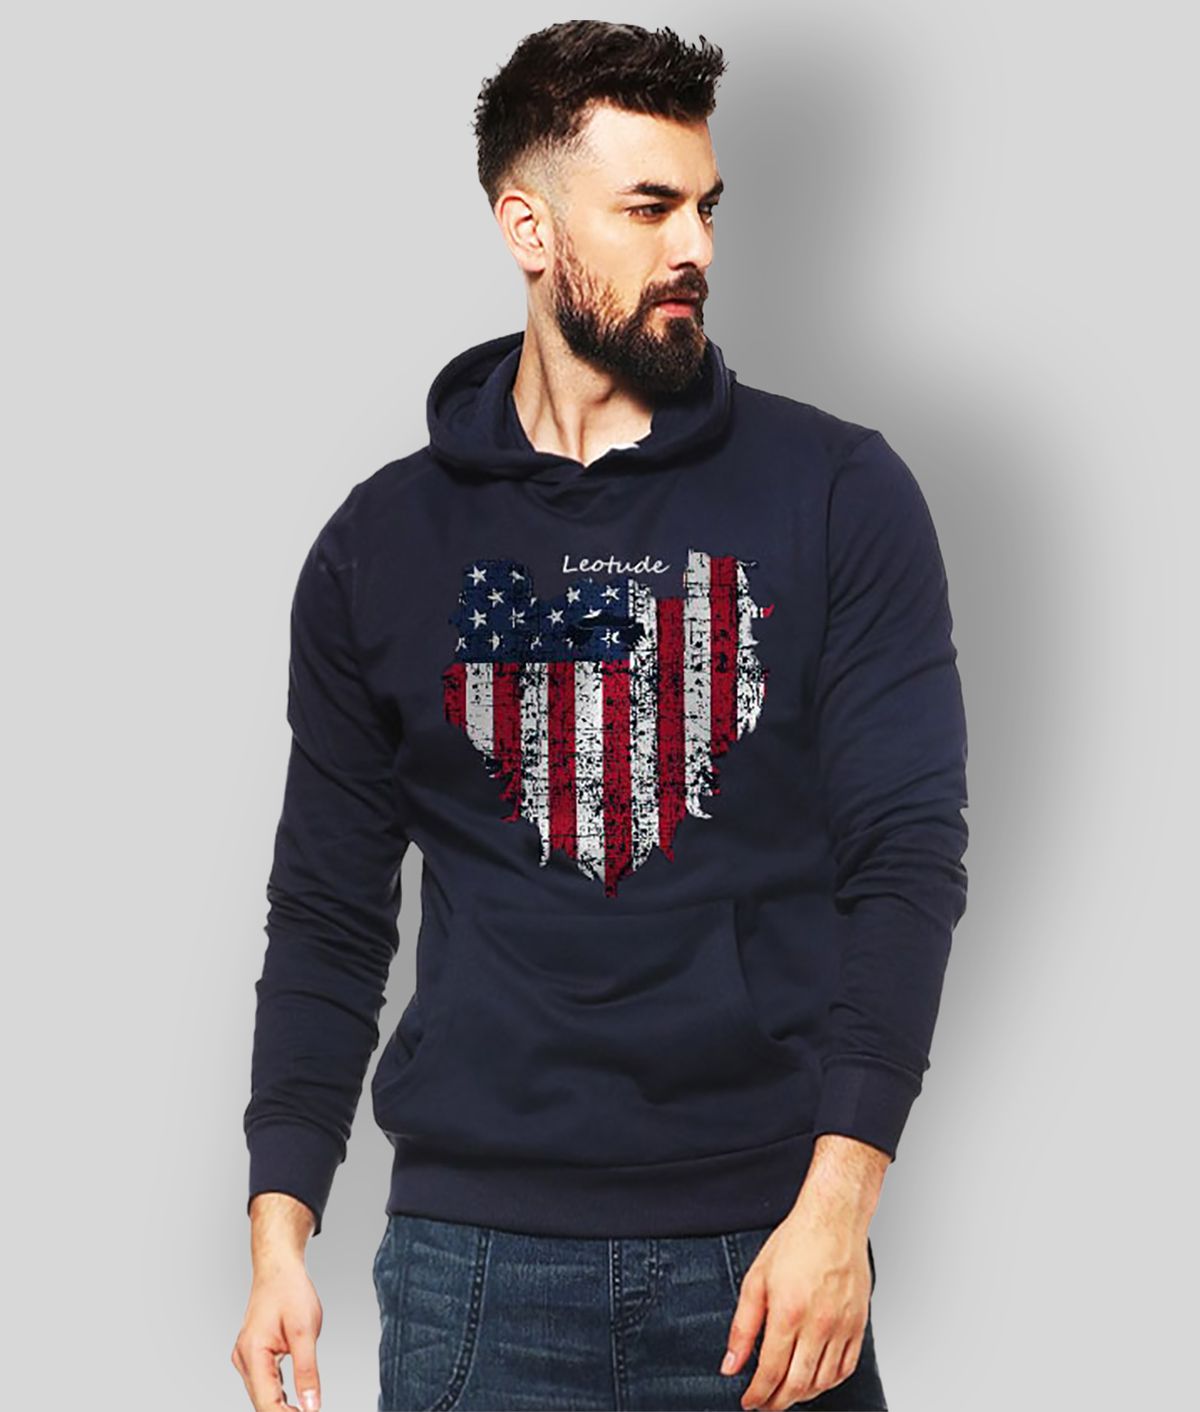 Leotude - Navy Fleece Regular Fit Men's Sweatshirt ( Pack of 1 )